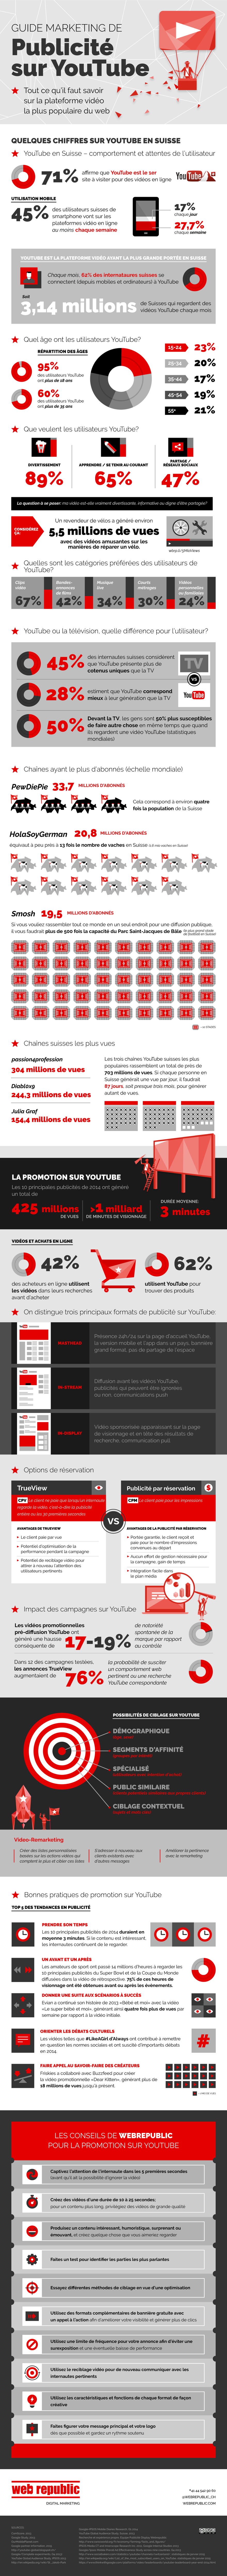 YouTube est devenu un important canal publicitaire. Dans cette infographie, nous avons rassemblé les faits importants sur la publicité sur YouTube.